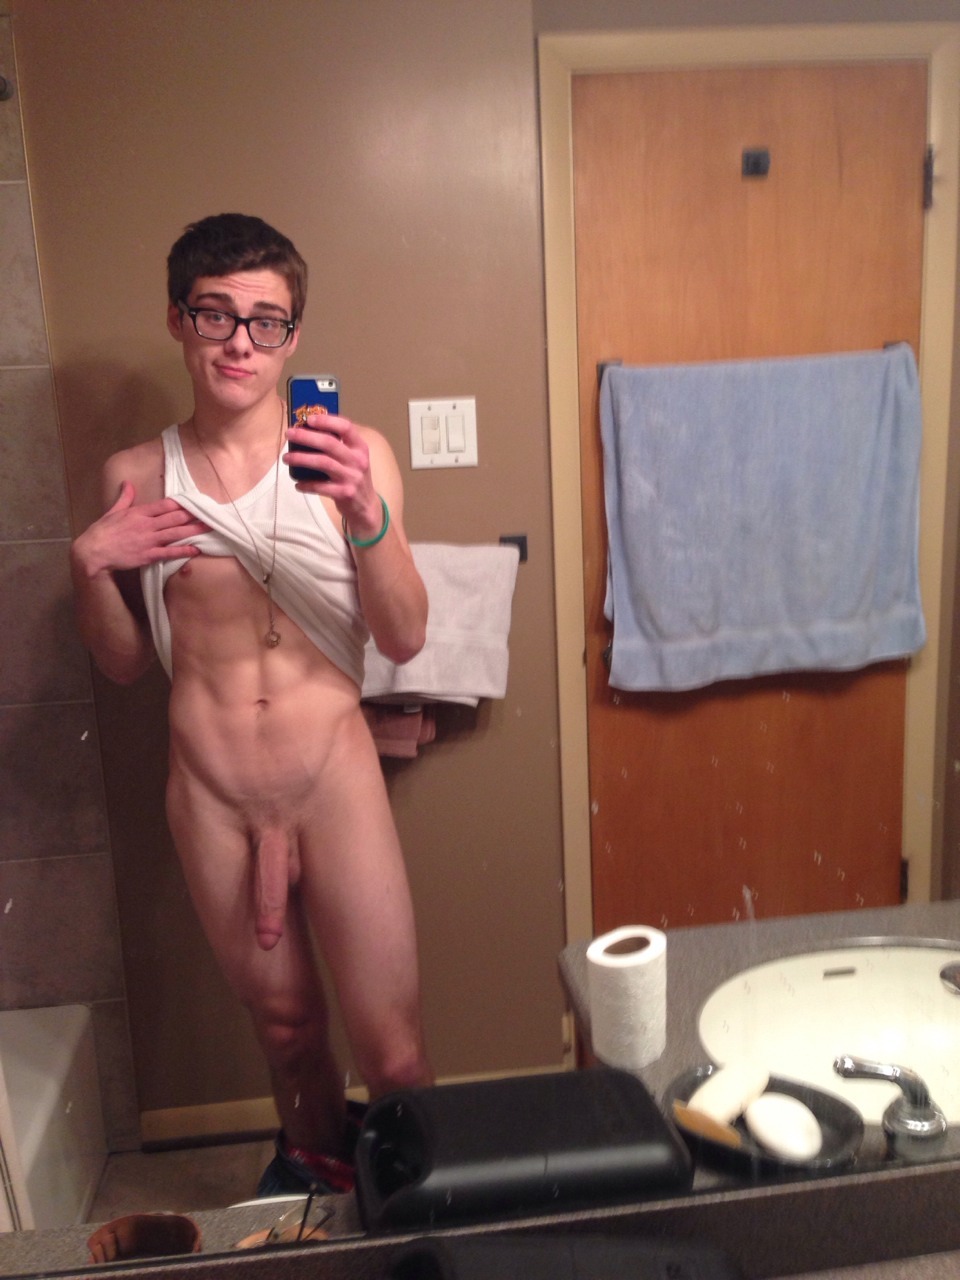 Cute amateur naked guy selfies